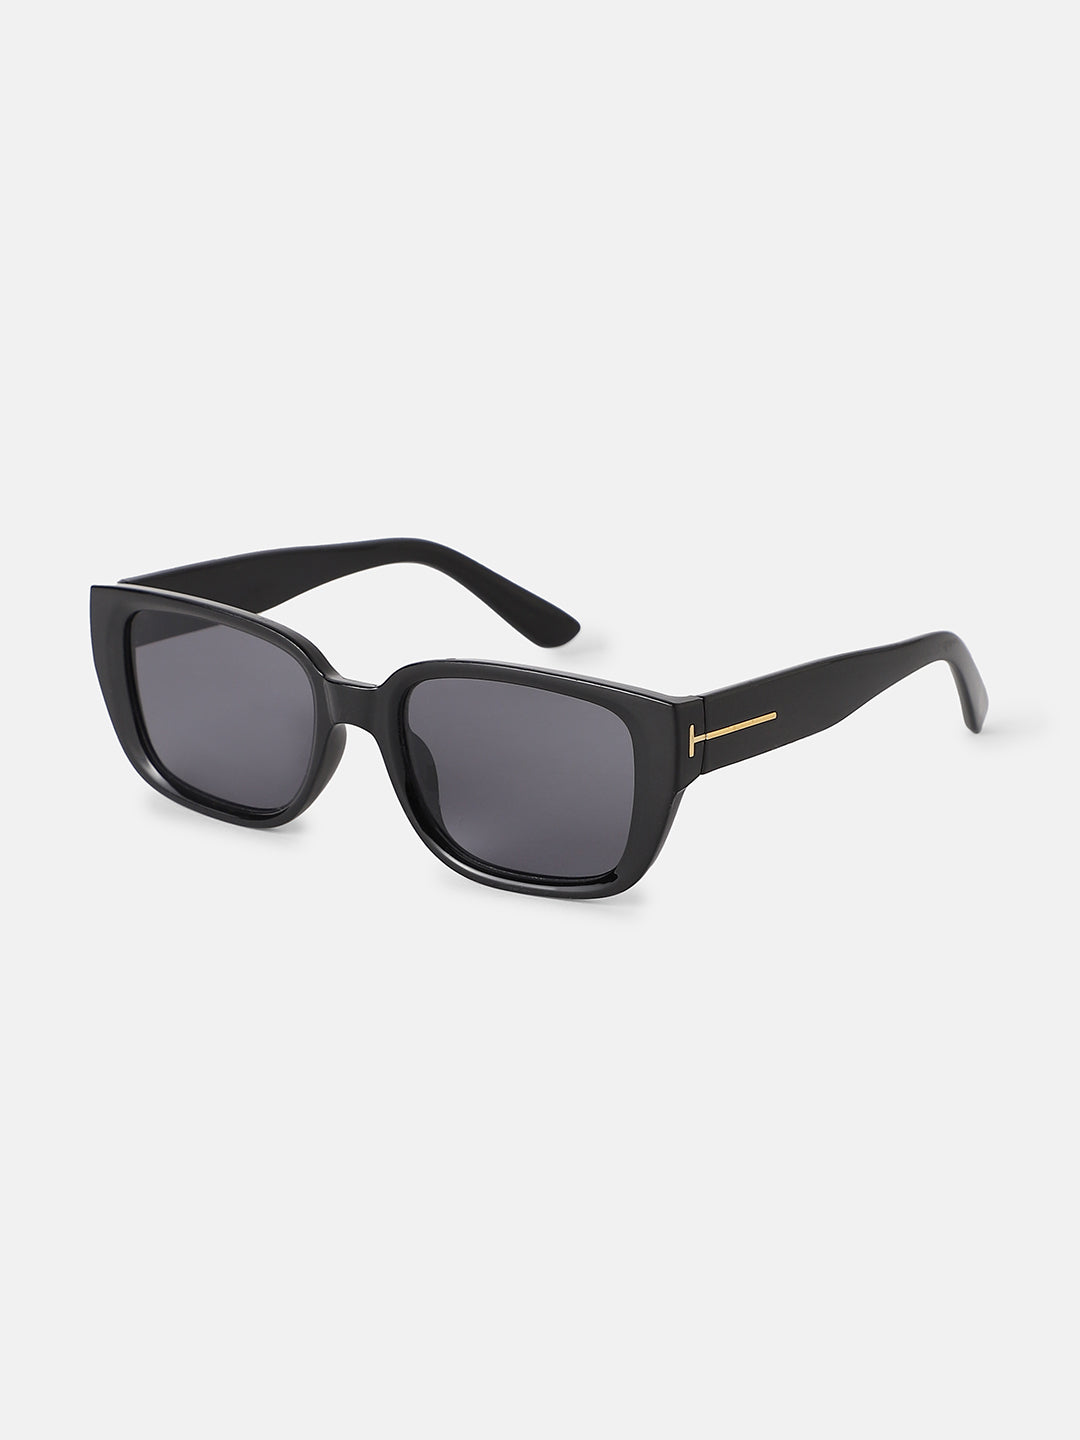 Women's Full Rim Rectangular Sunglasses - Black